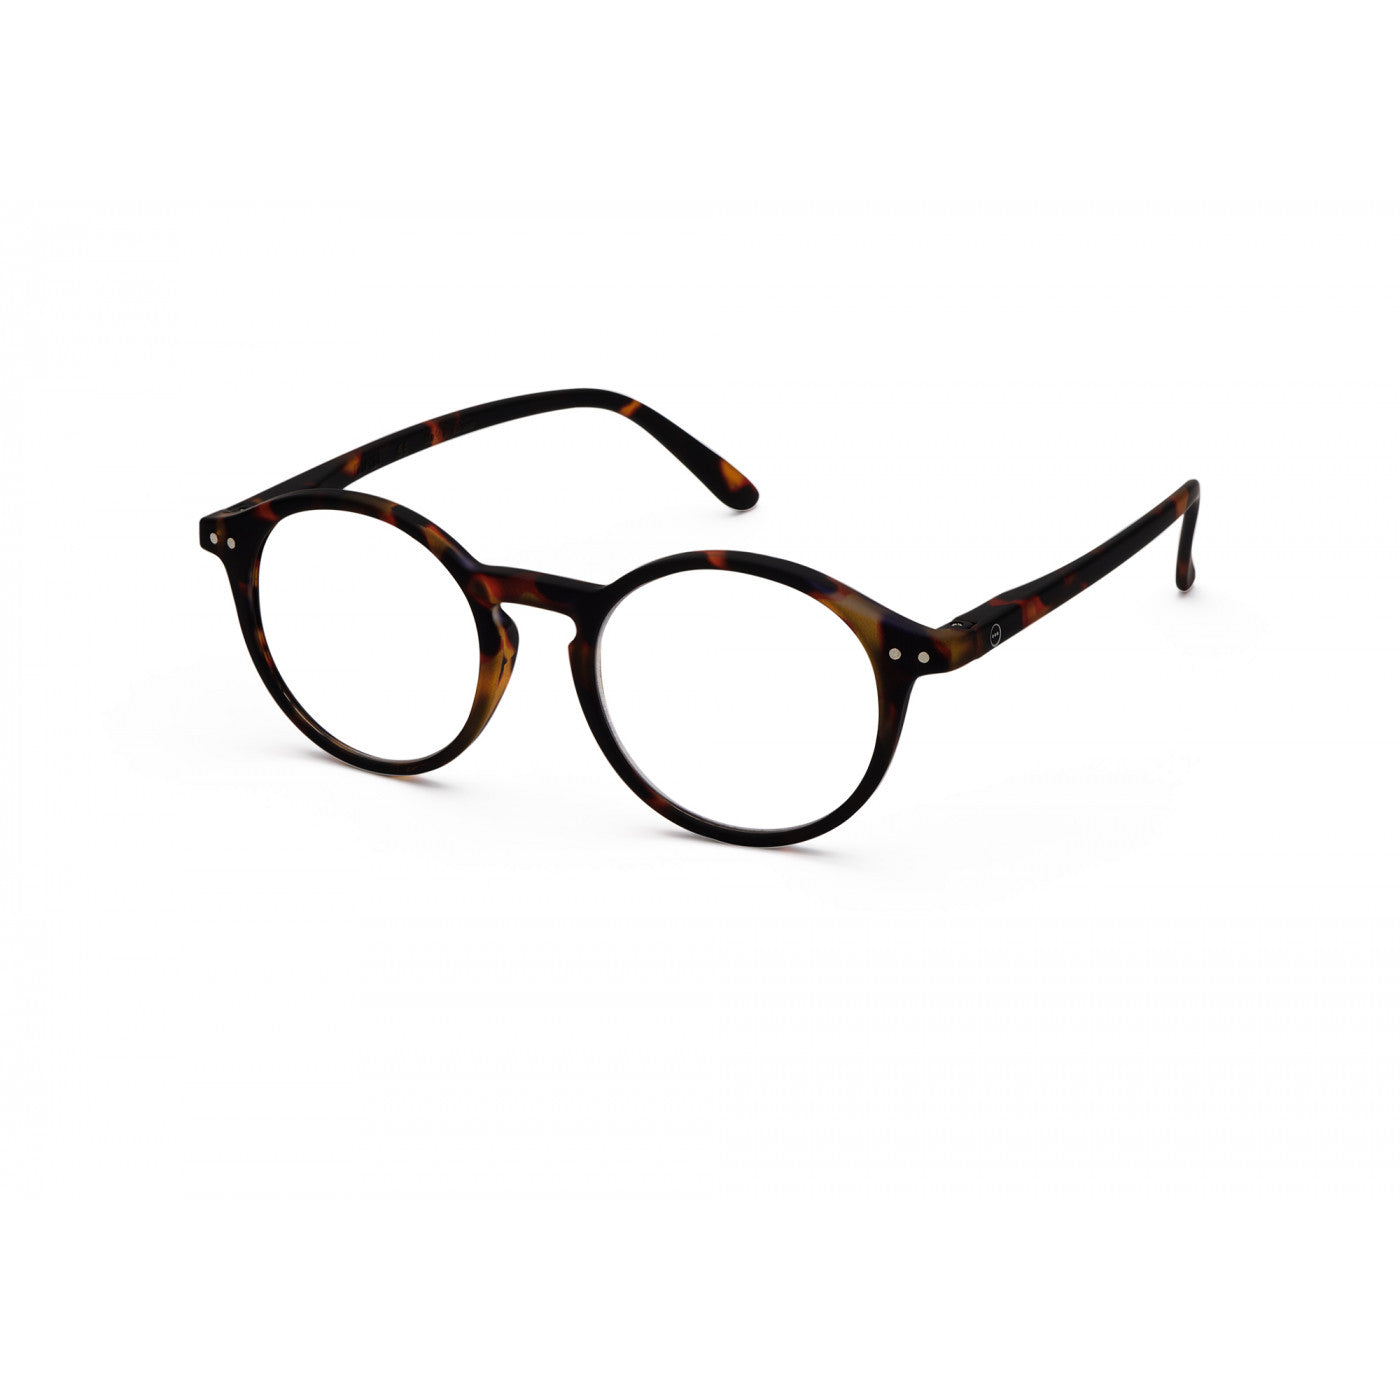 Unisex Reading Glasses - Style D - Tortoise 2.5